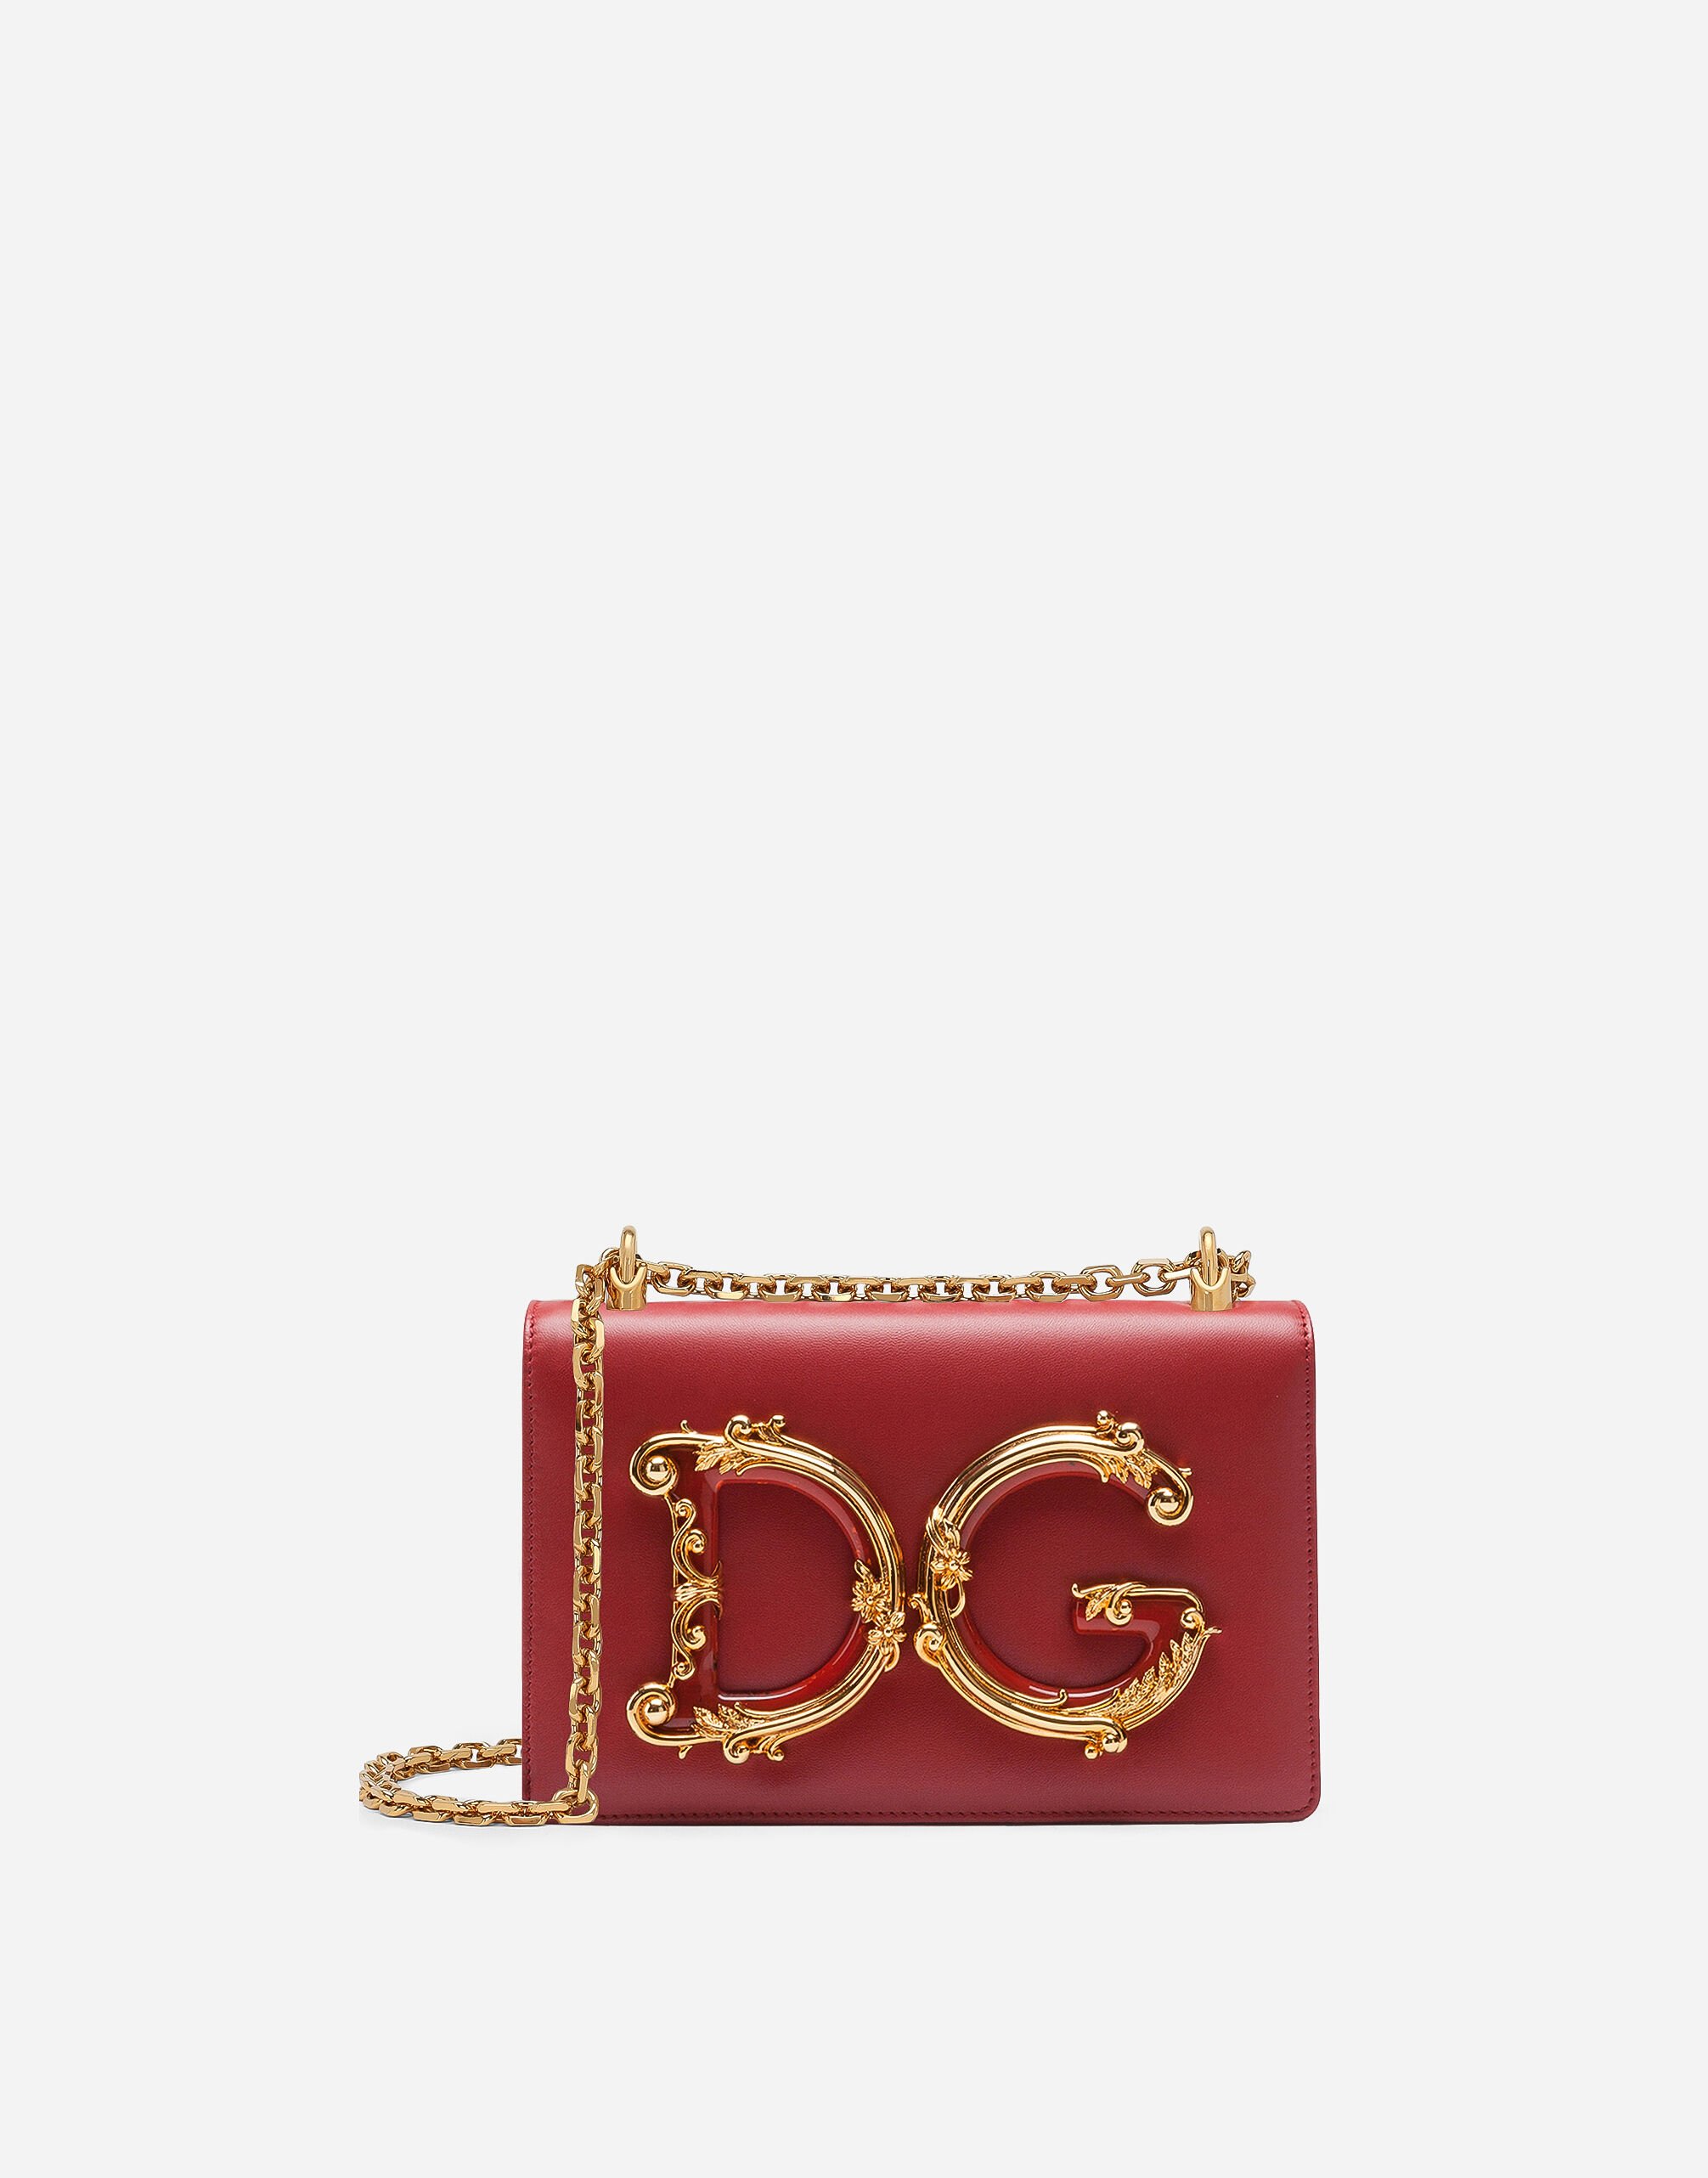 Dolce & Gabbana DG GIRLS 纳帕皮革手袋 多色 BB6498AS110